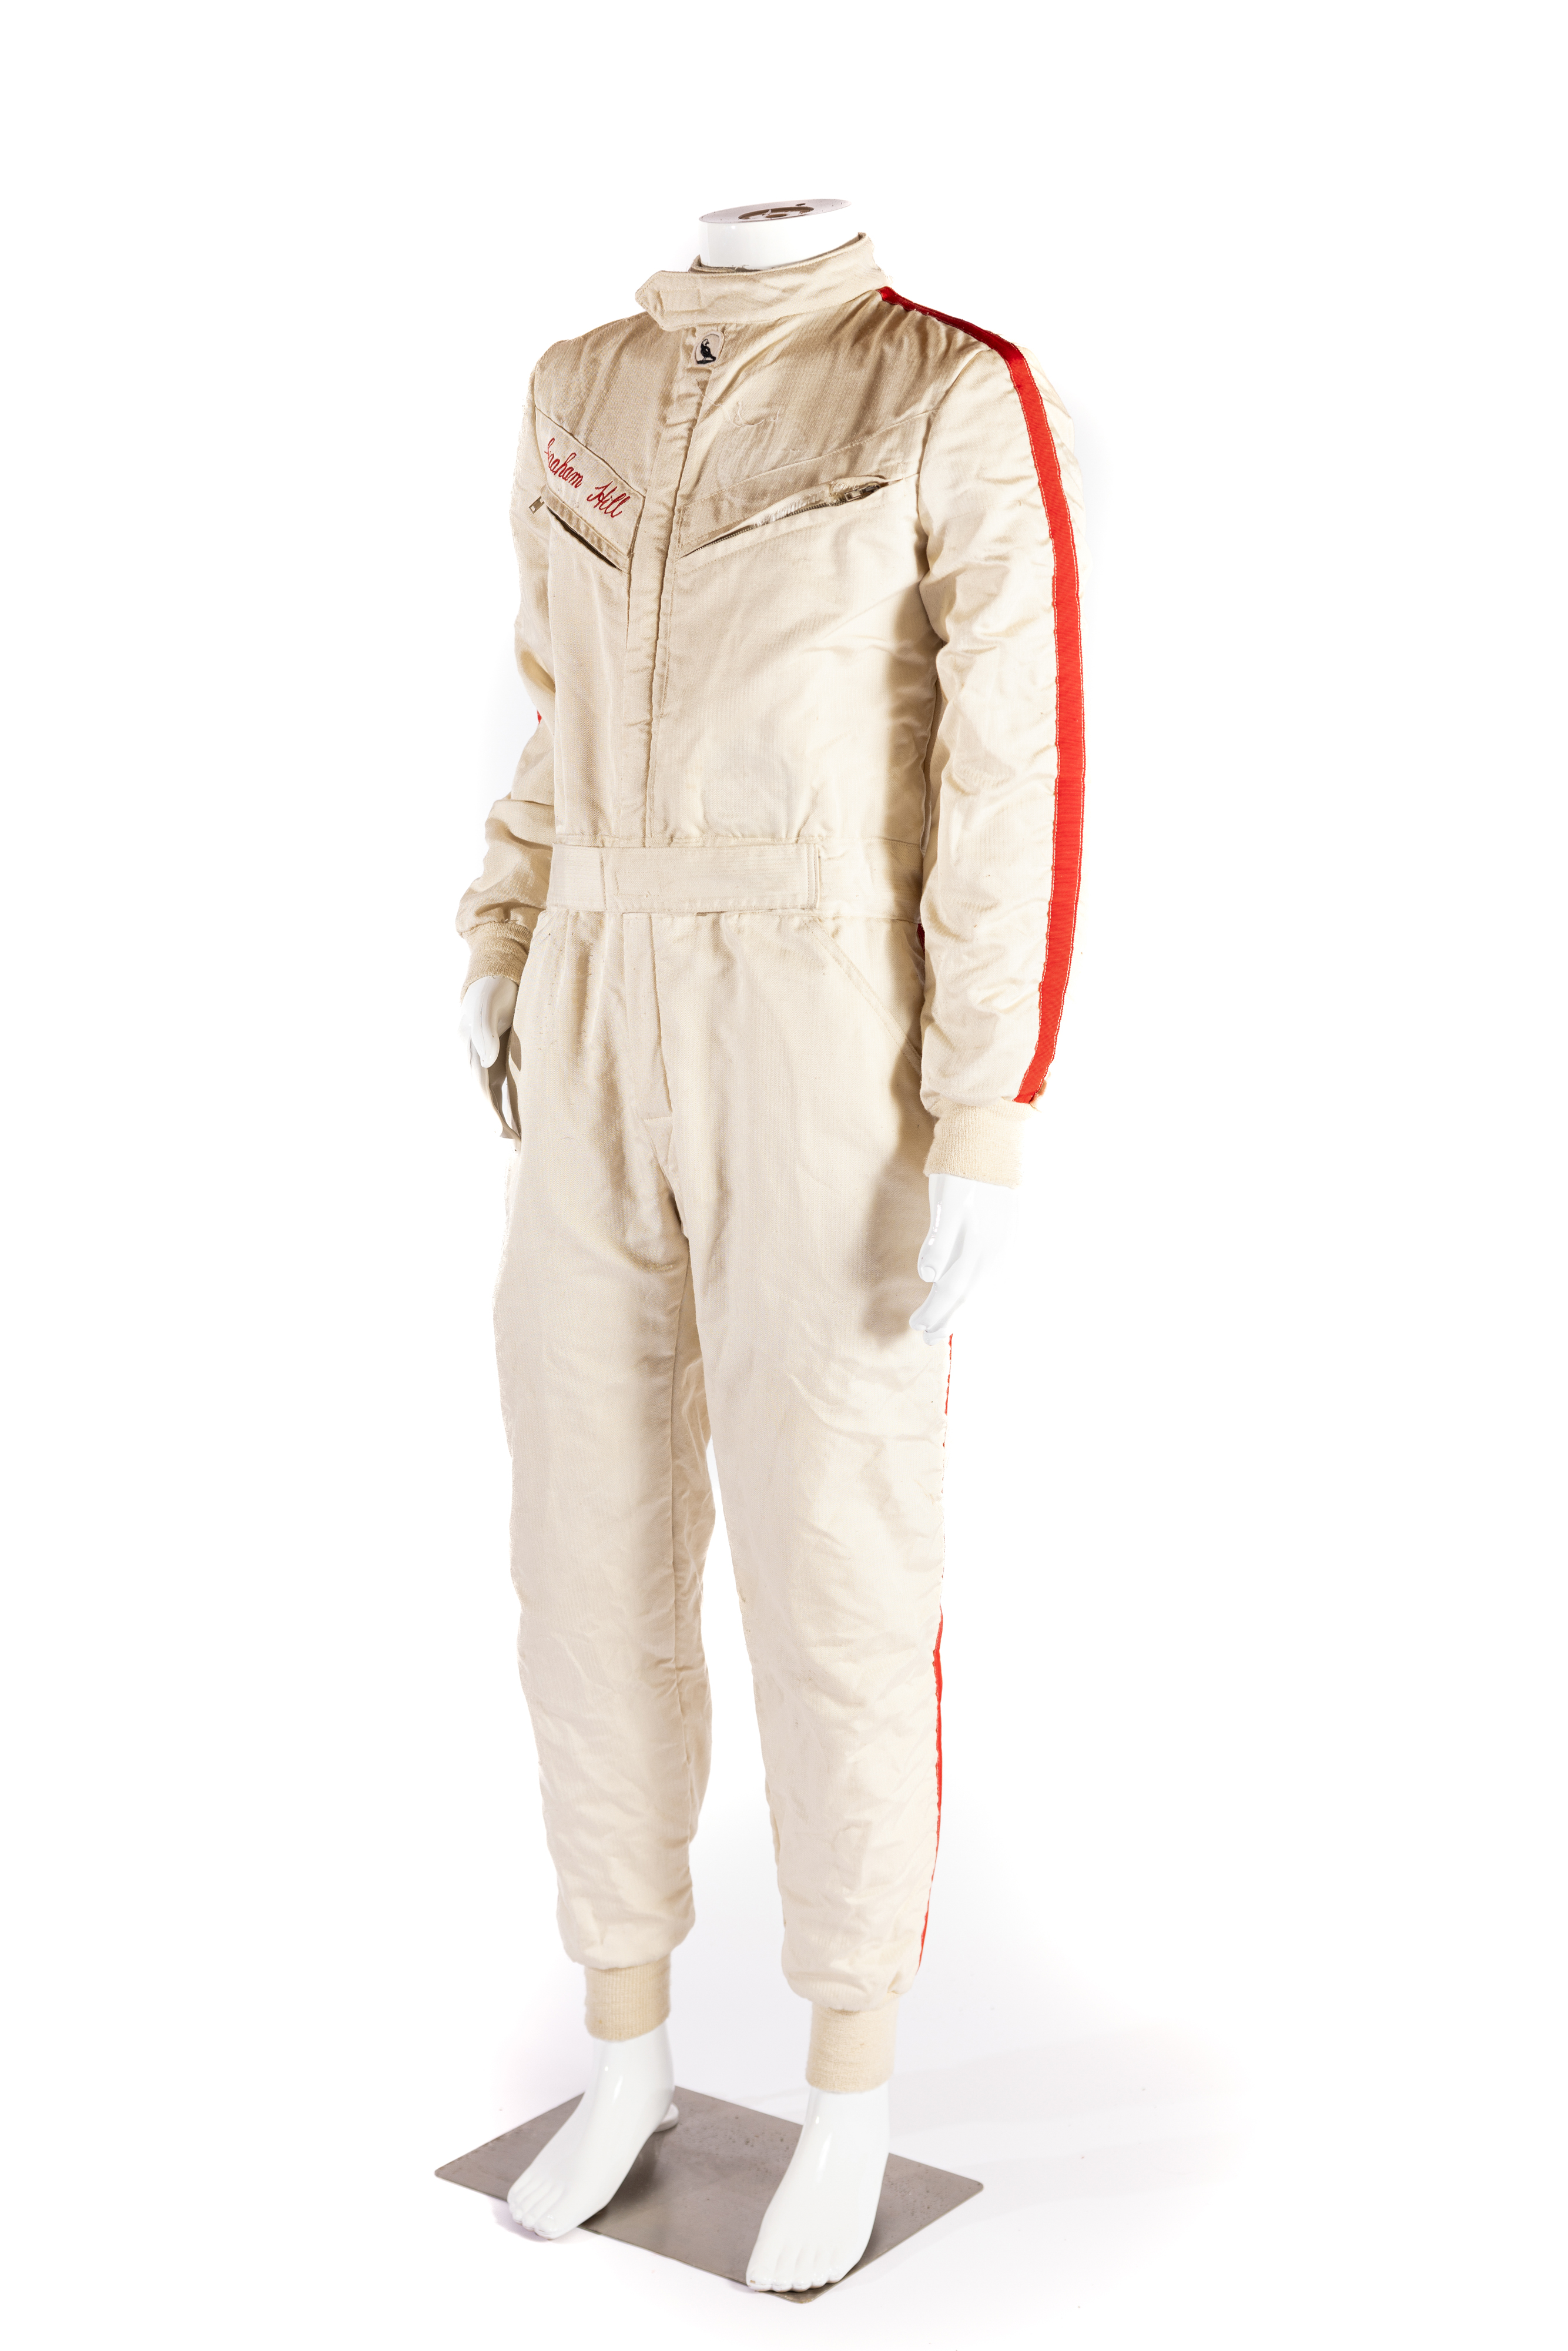 Graham Hill Race Suit